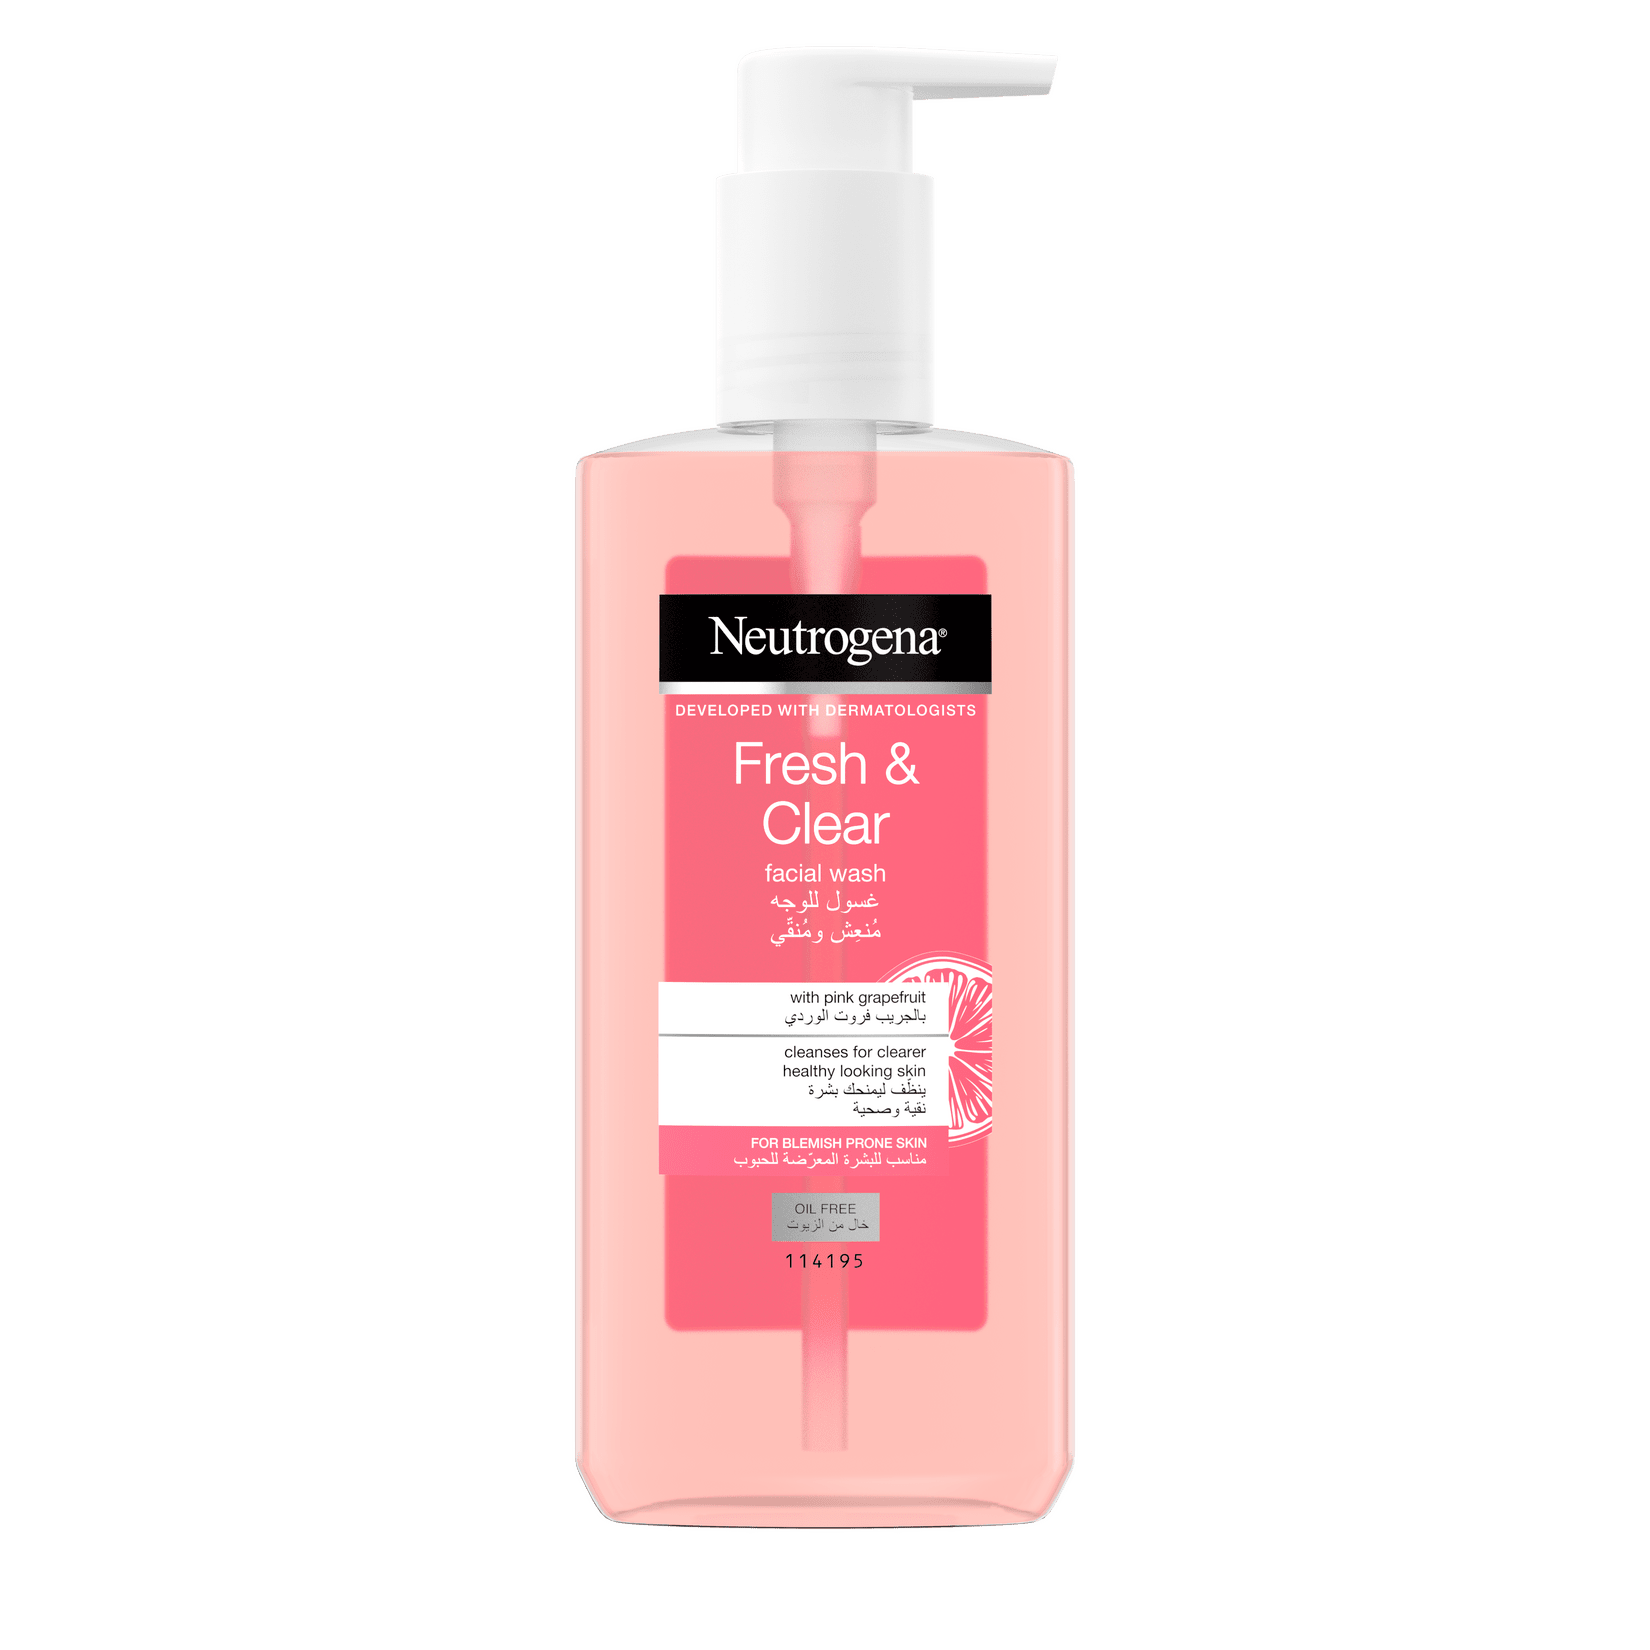 neutrogena visibly clear pink grapefruit facial wash review sanwarna.pk